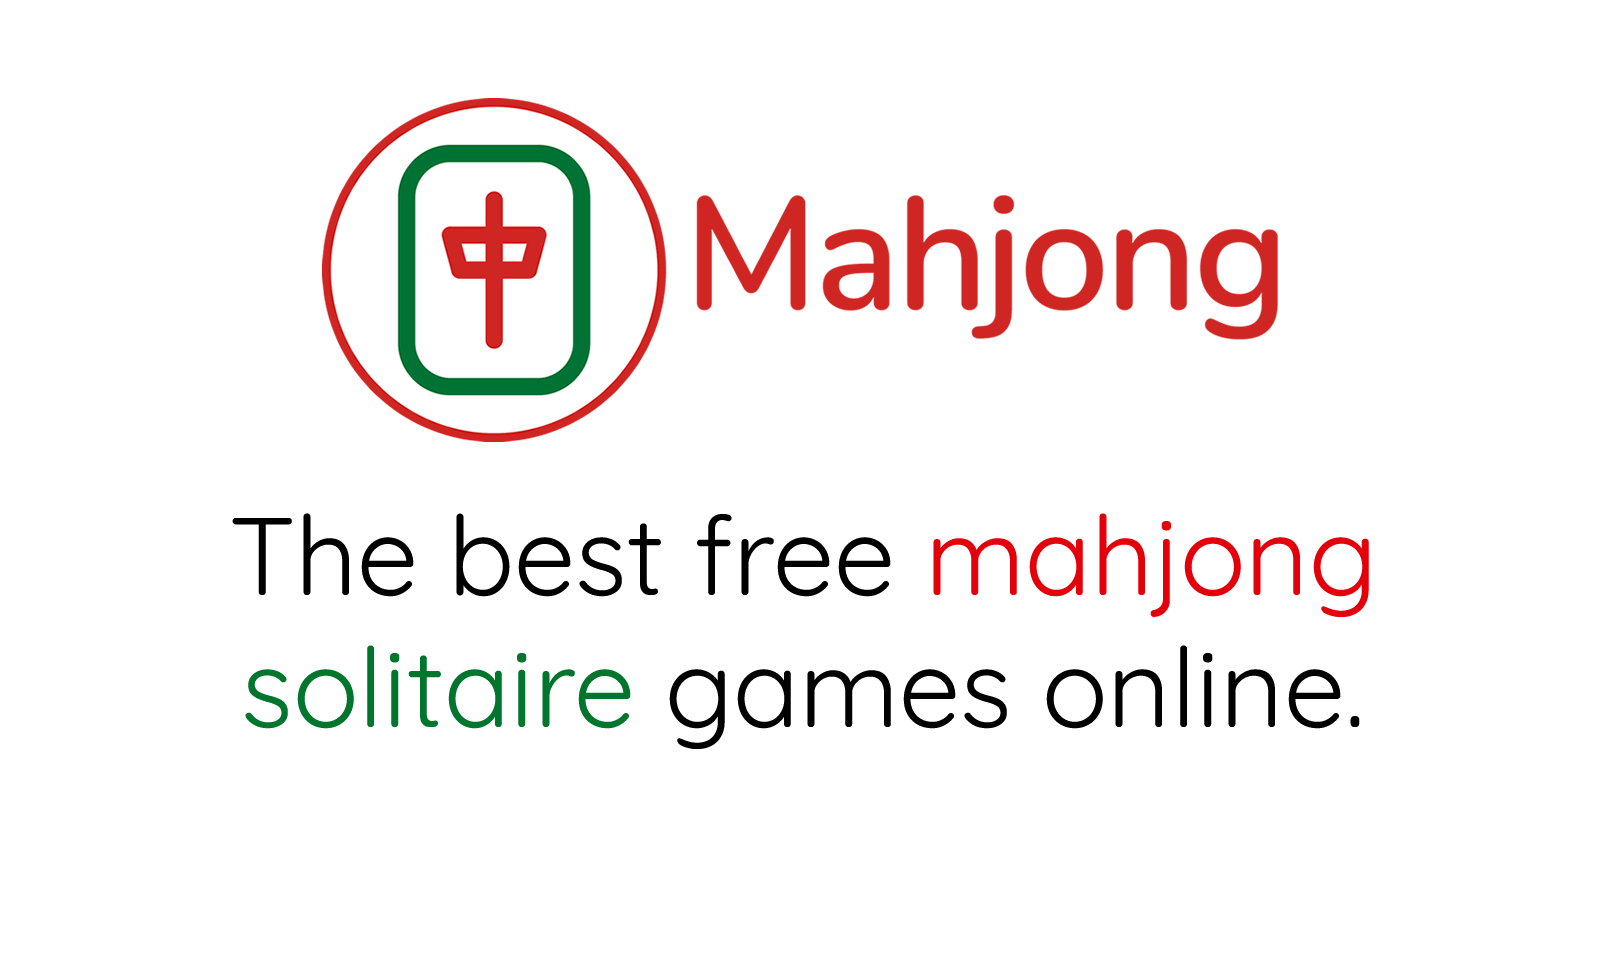 Mahjong Egipcio juega gratis pantalla completa!